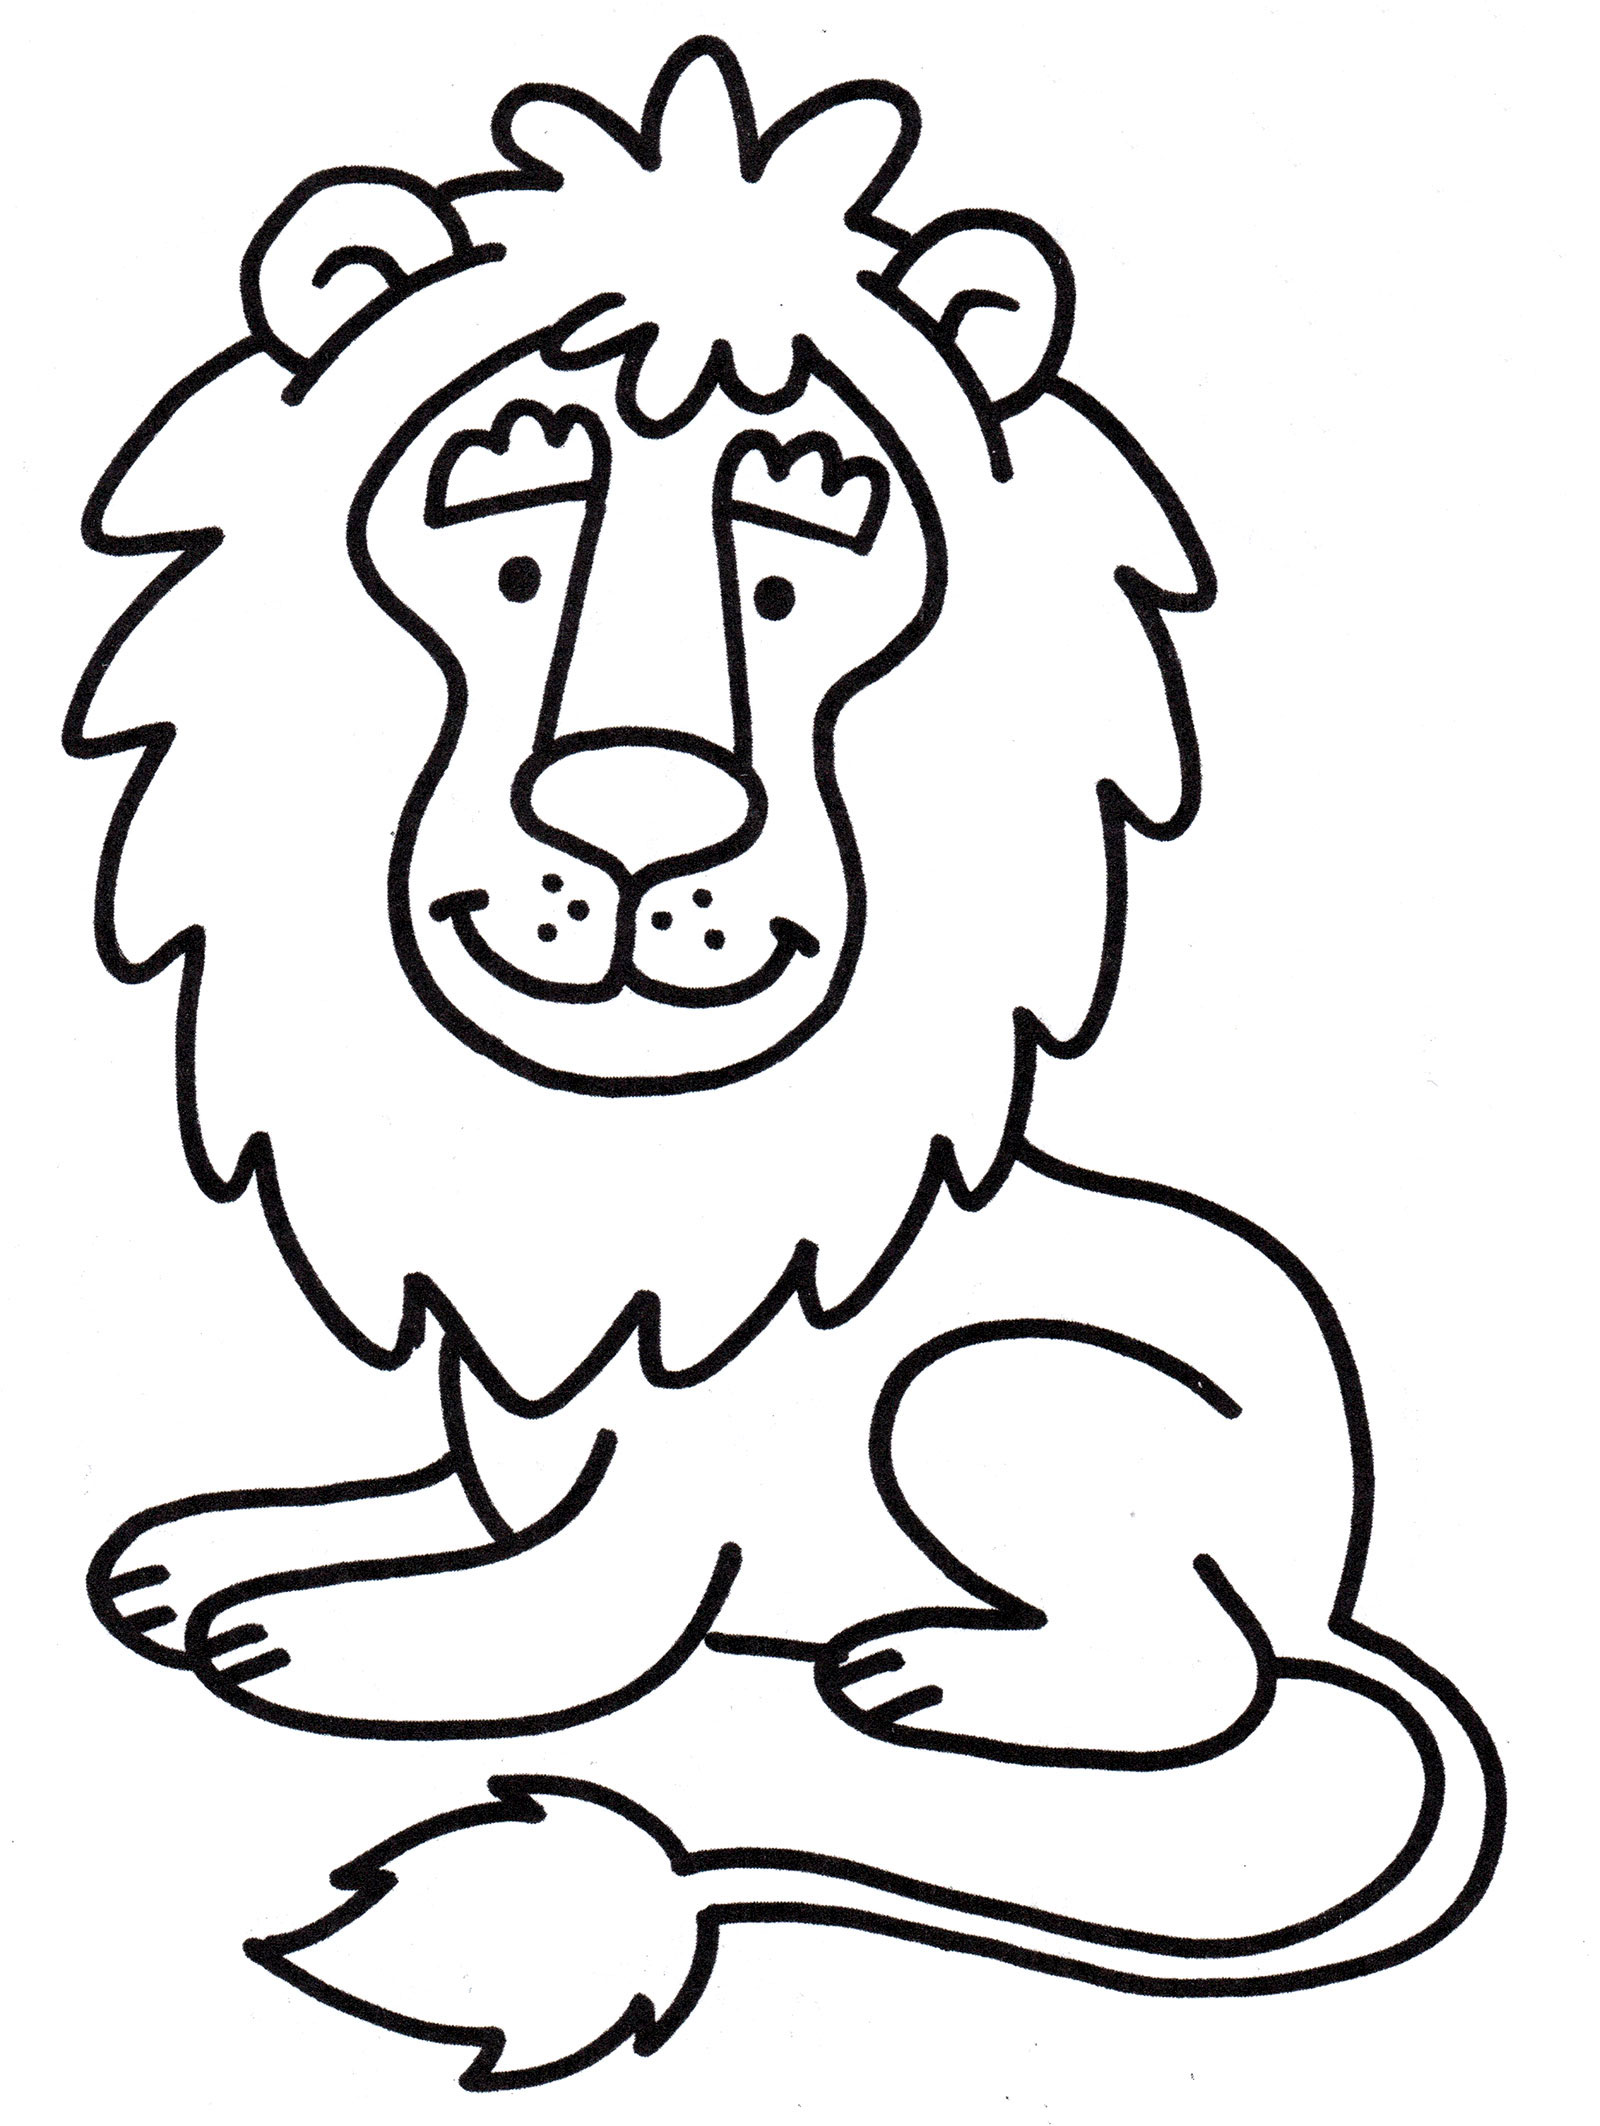 Львенок раскраска для детей